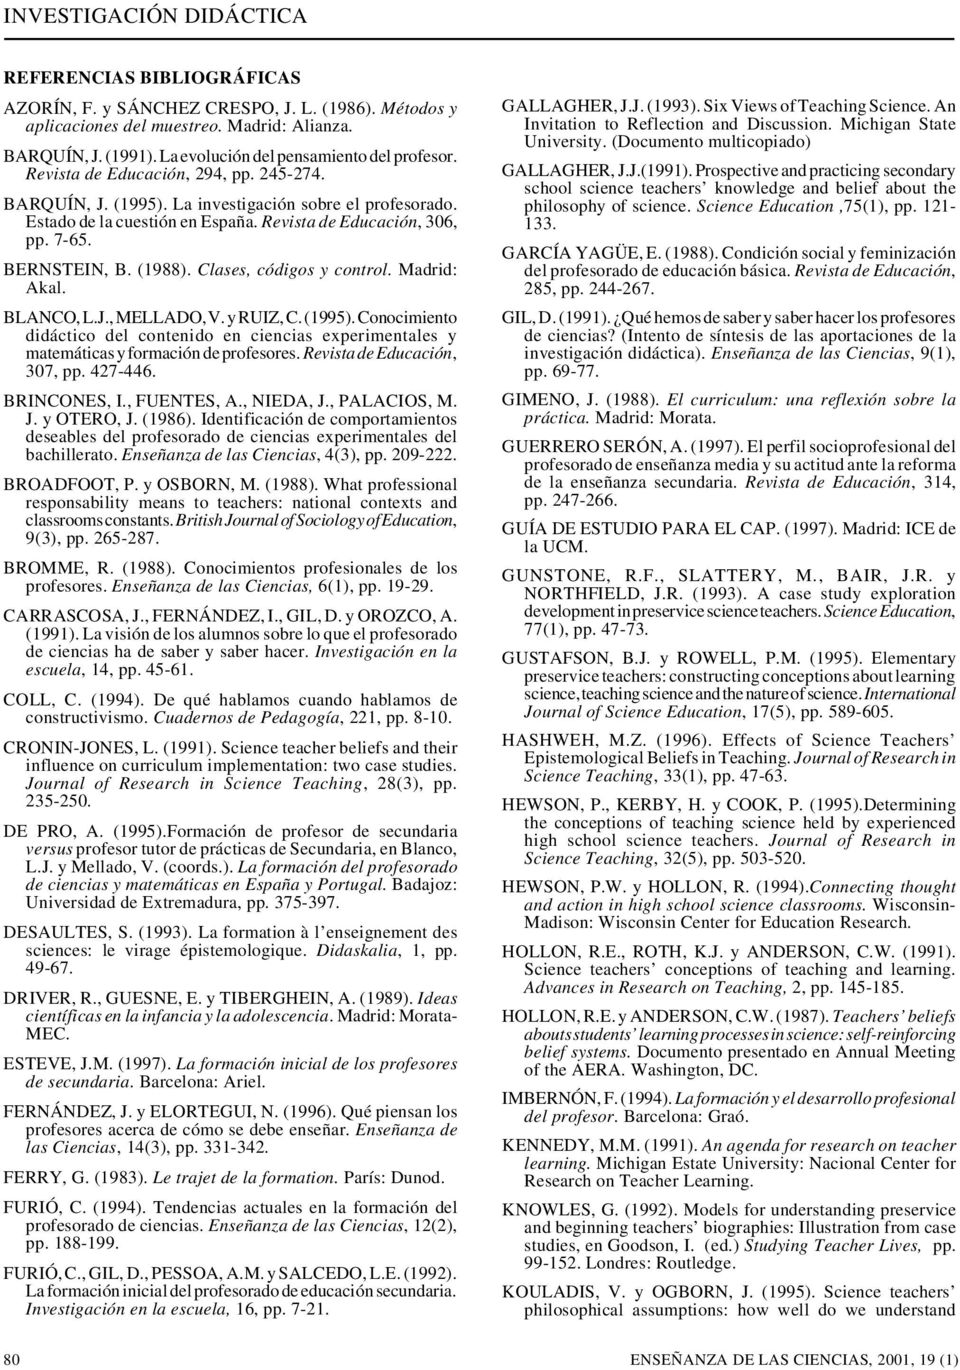 Clases, códigos y control. Madrid: Akal. BLANCO, L.J., MELLADO, V. y RUIZ, C. (1995). Conocimiento didáctico del contenido en ciencias experimentales y matemáticas y formación de profesores.